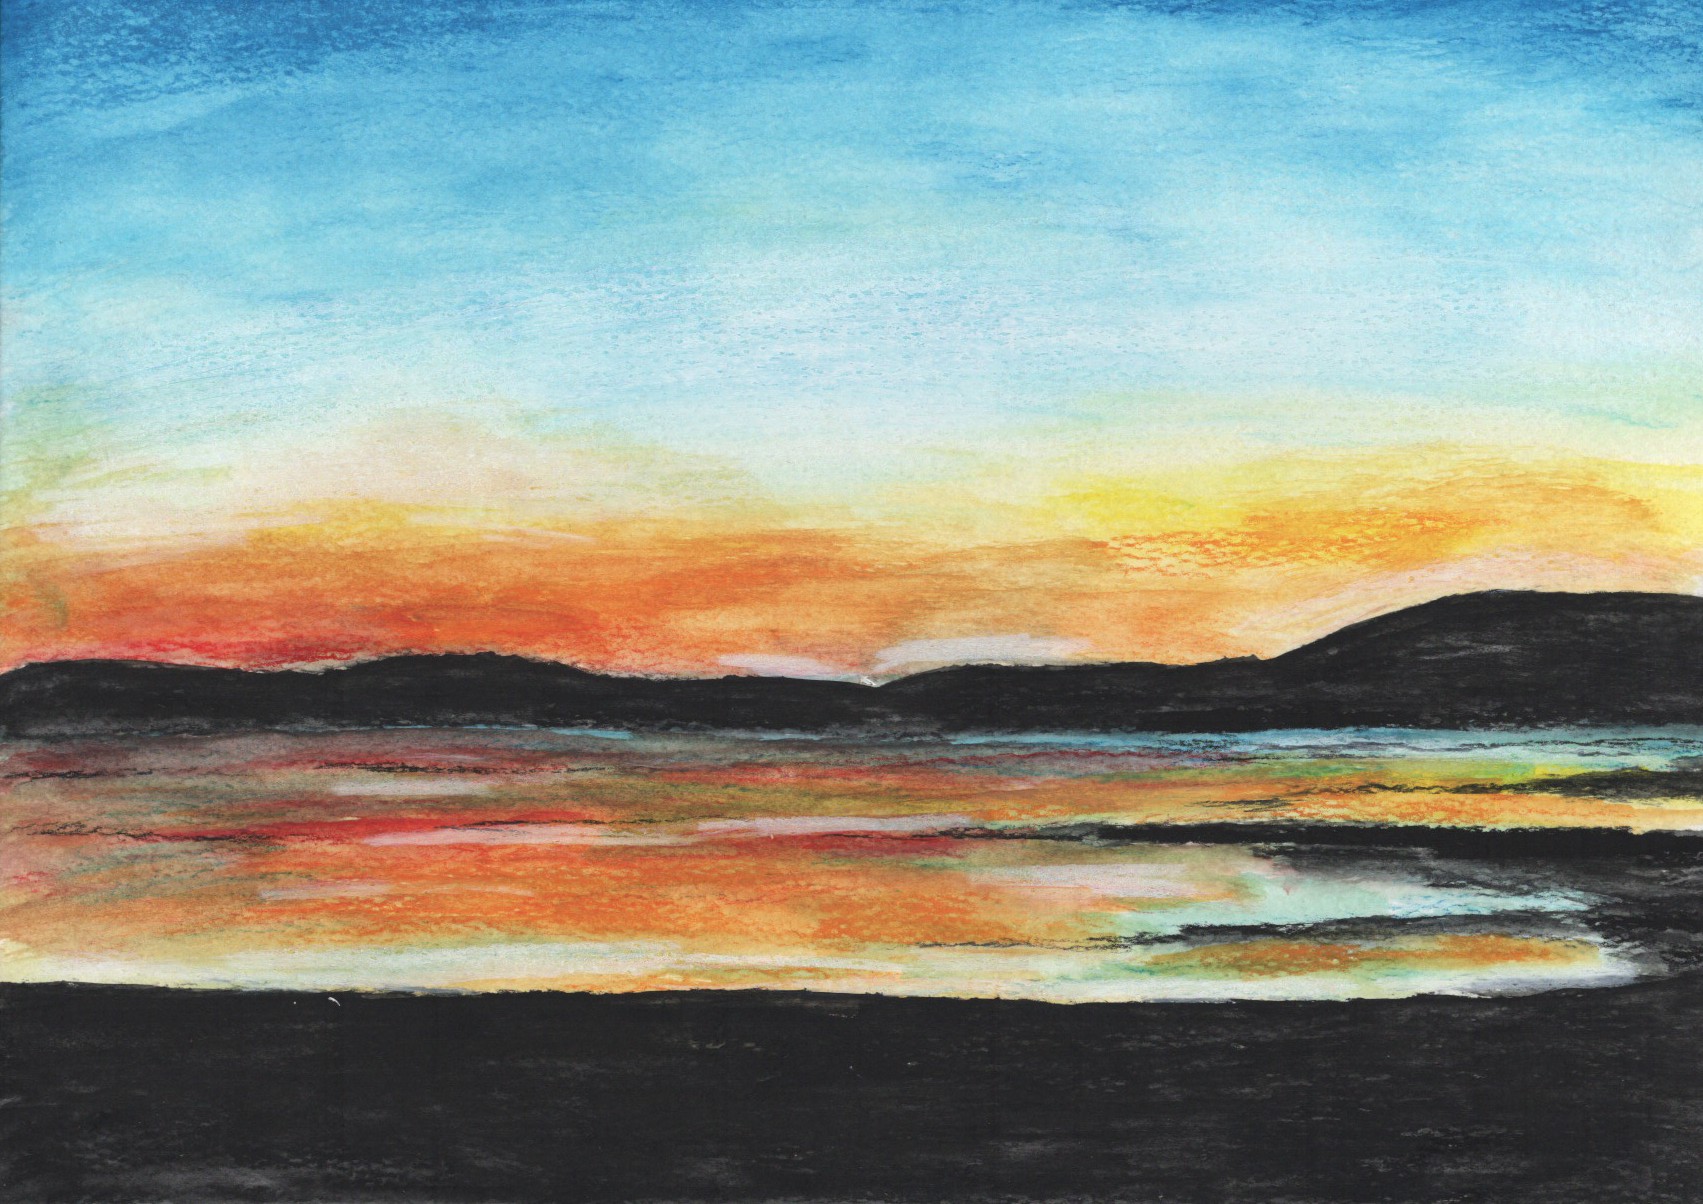 Kintyre sunset